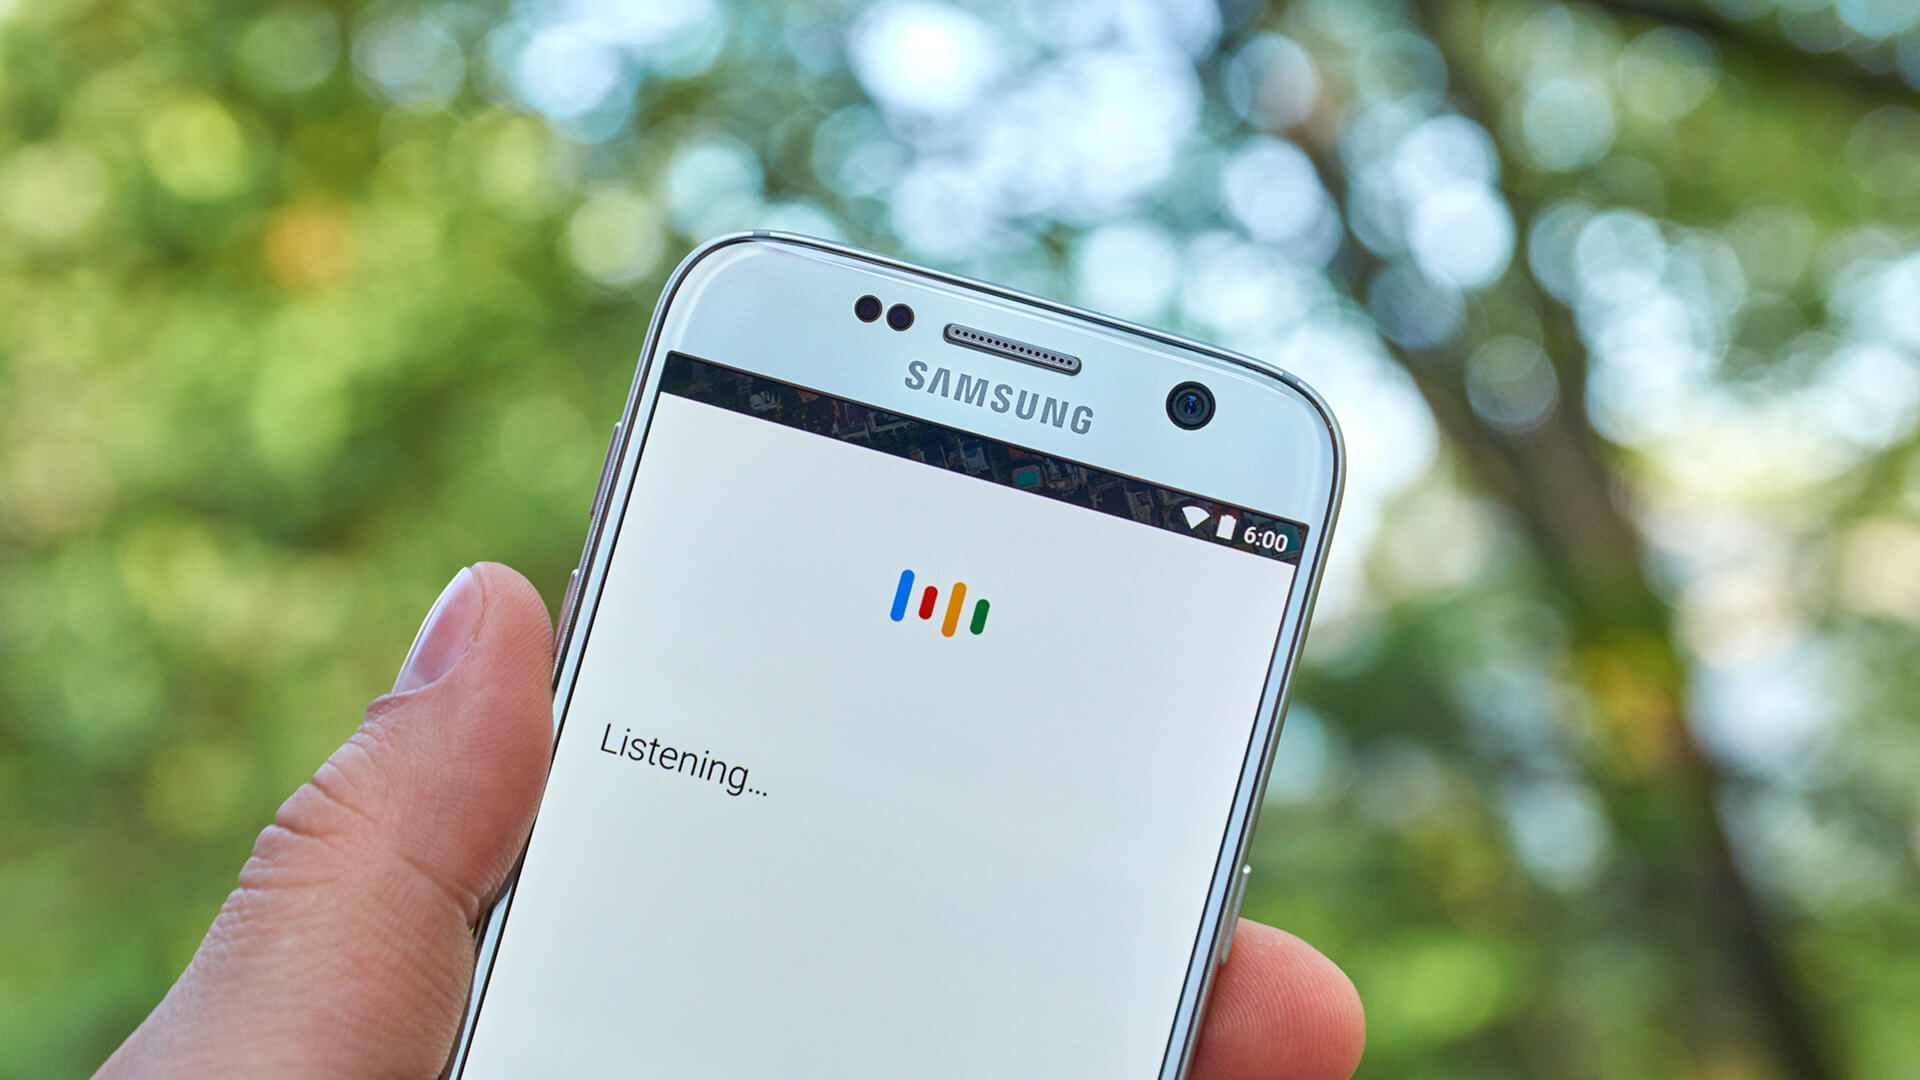 Google Search déploie une interface de recherche plus visuelle sur mobile avec un format de grille